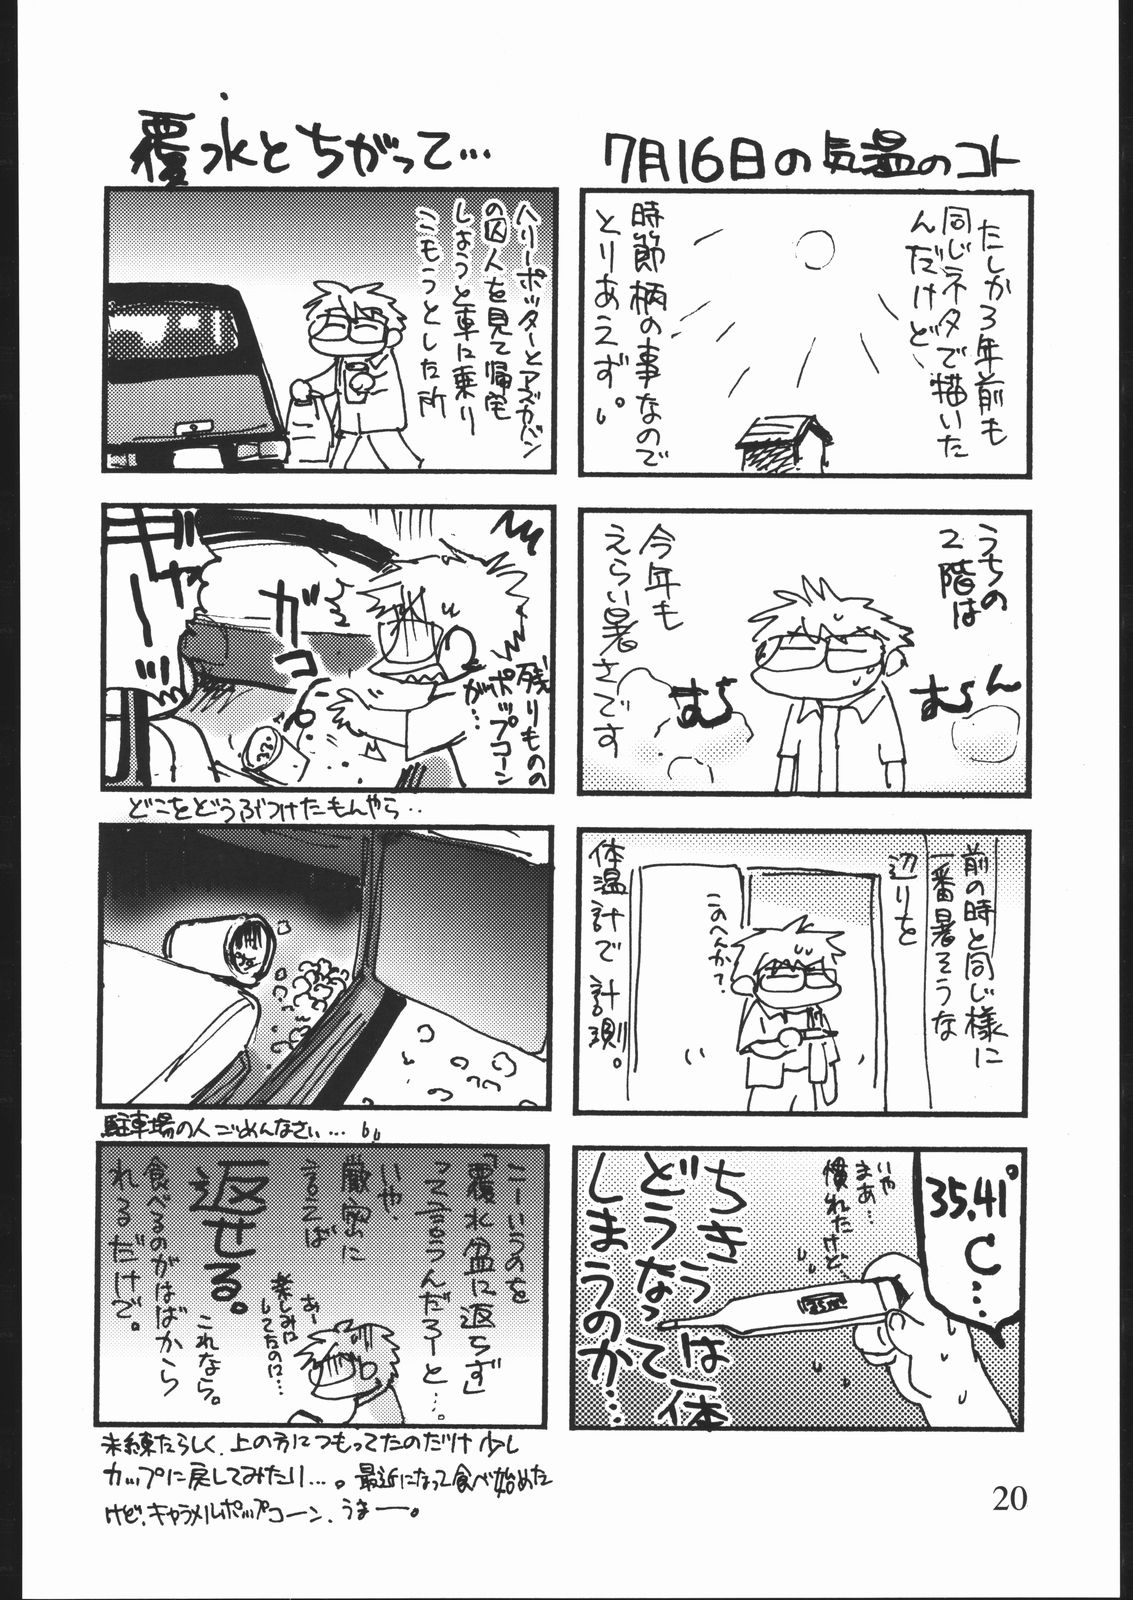 [井ノ頭研究所] 雑記帳2004夏